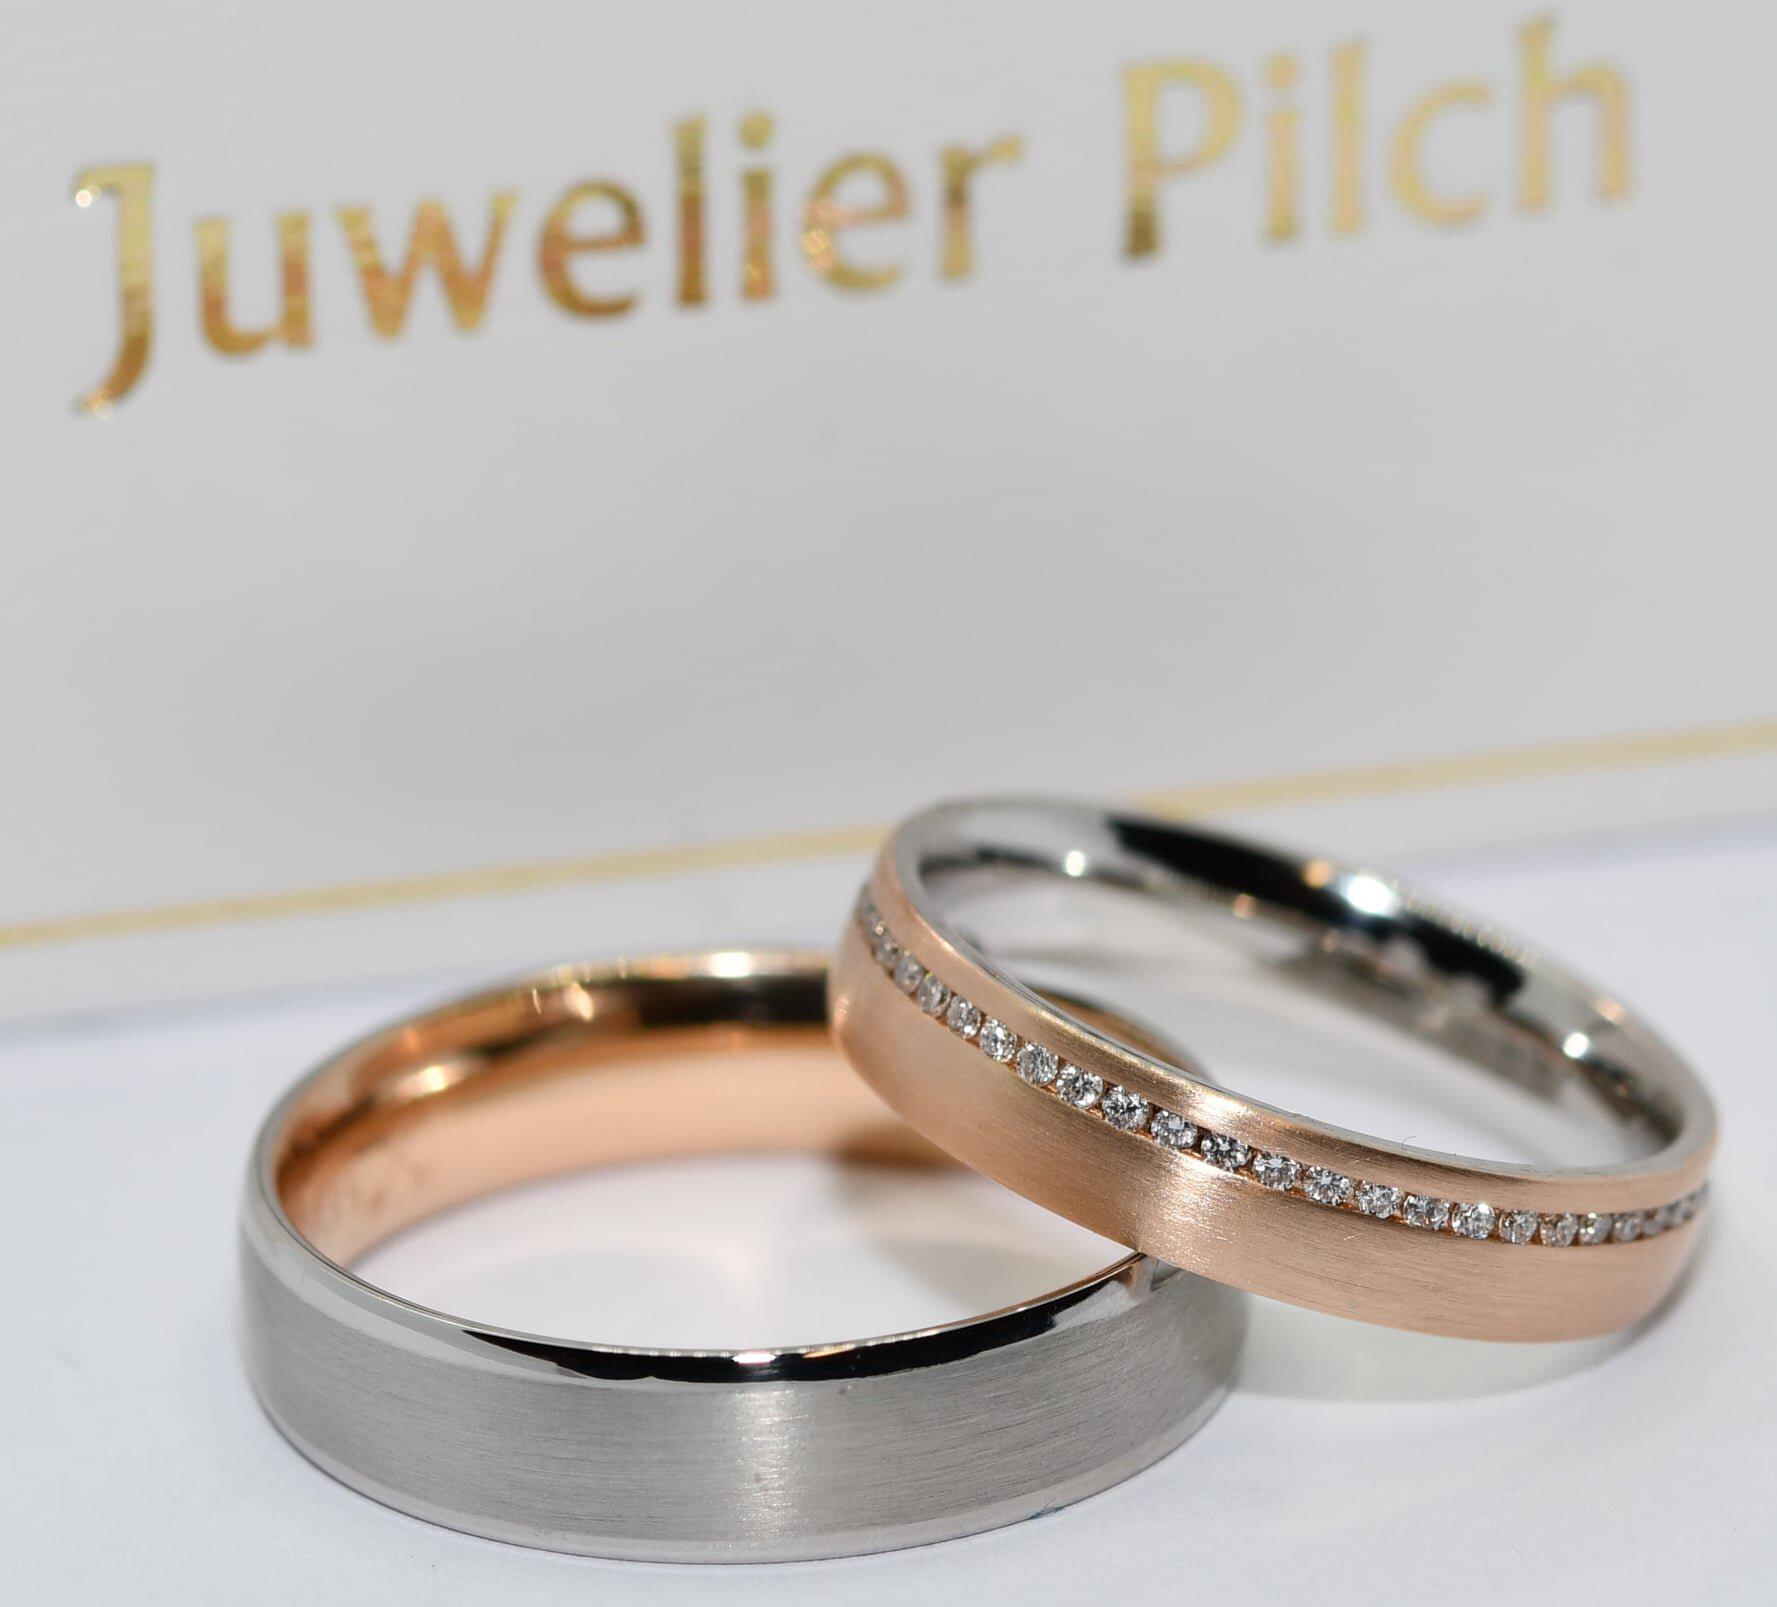 Kundenbild groß 41 Trauringstudio Erding - Trauringe Verlobungsringe Schmuck by Juwelier Pilch